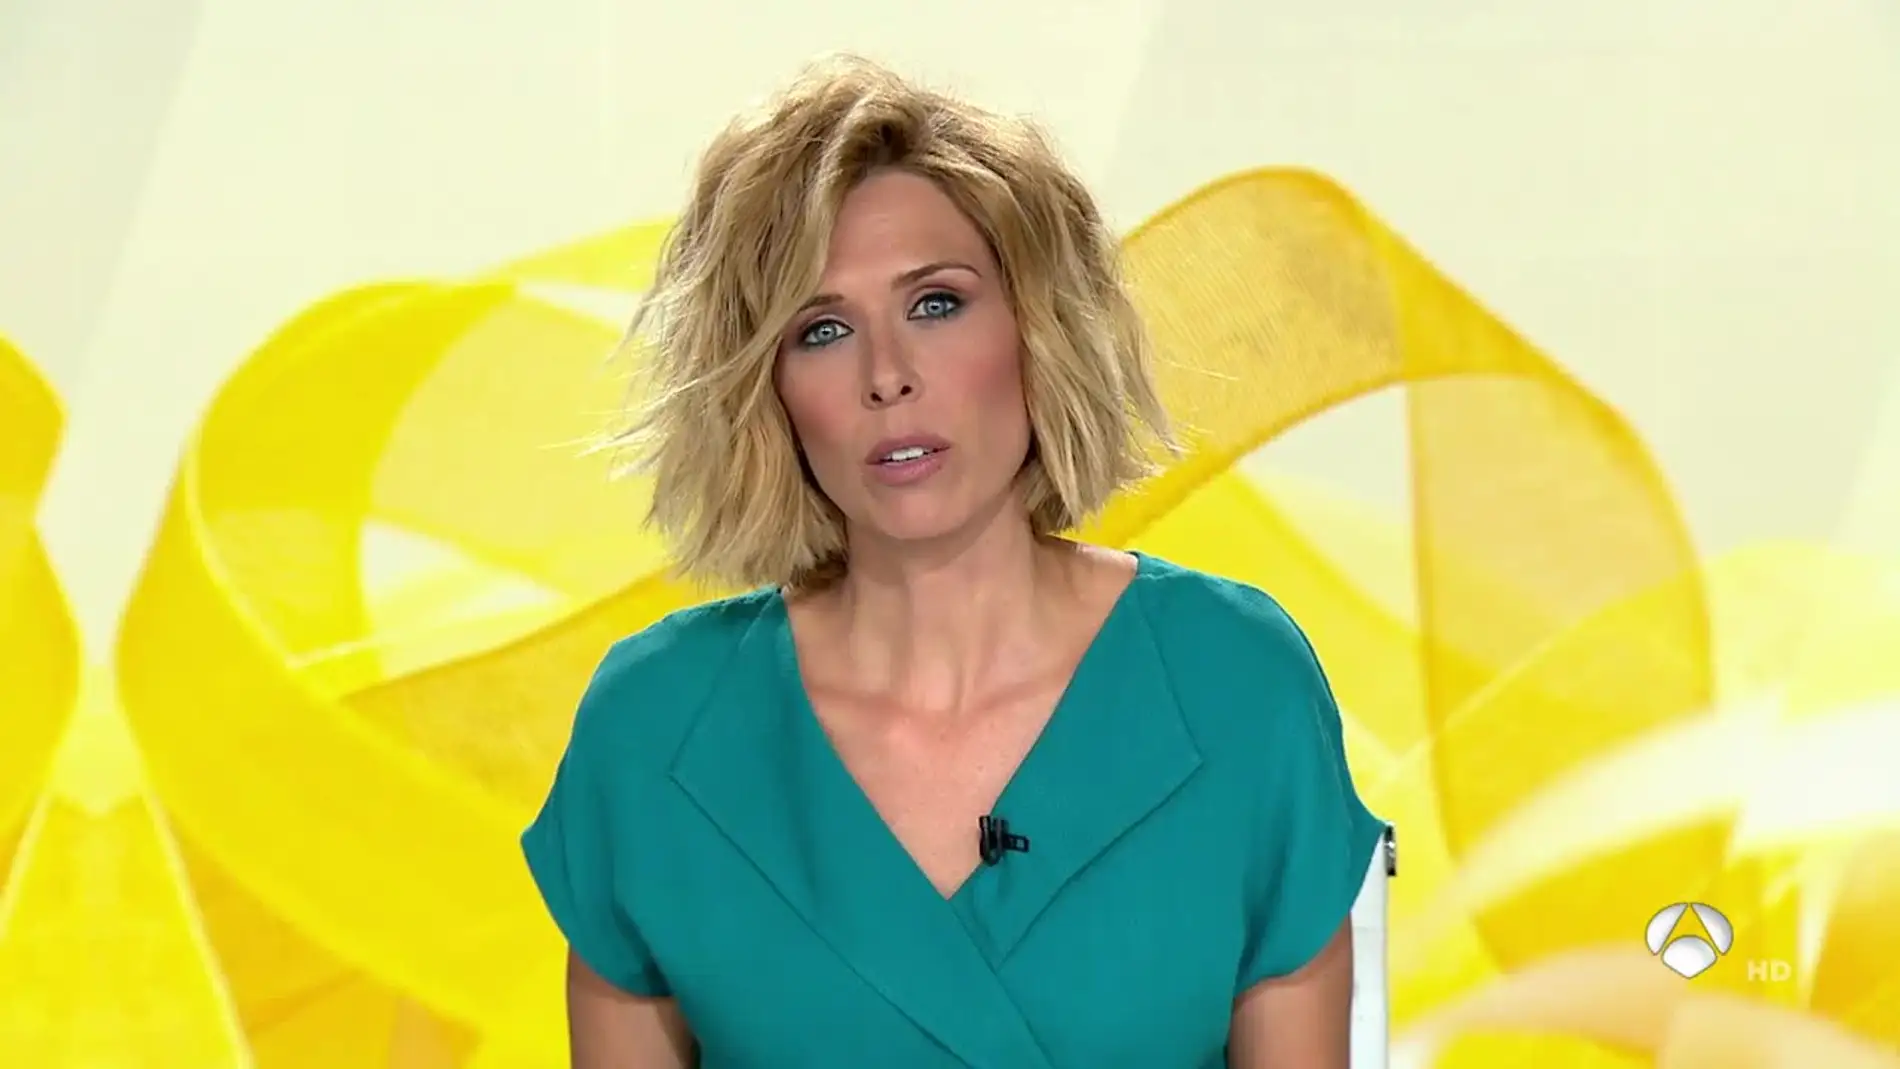 María José Sáez presentando Antena 3 Noticias 1